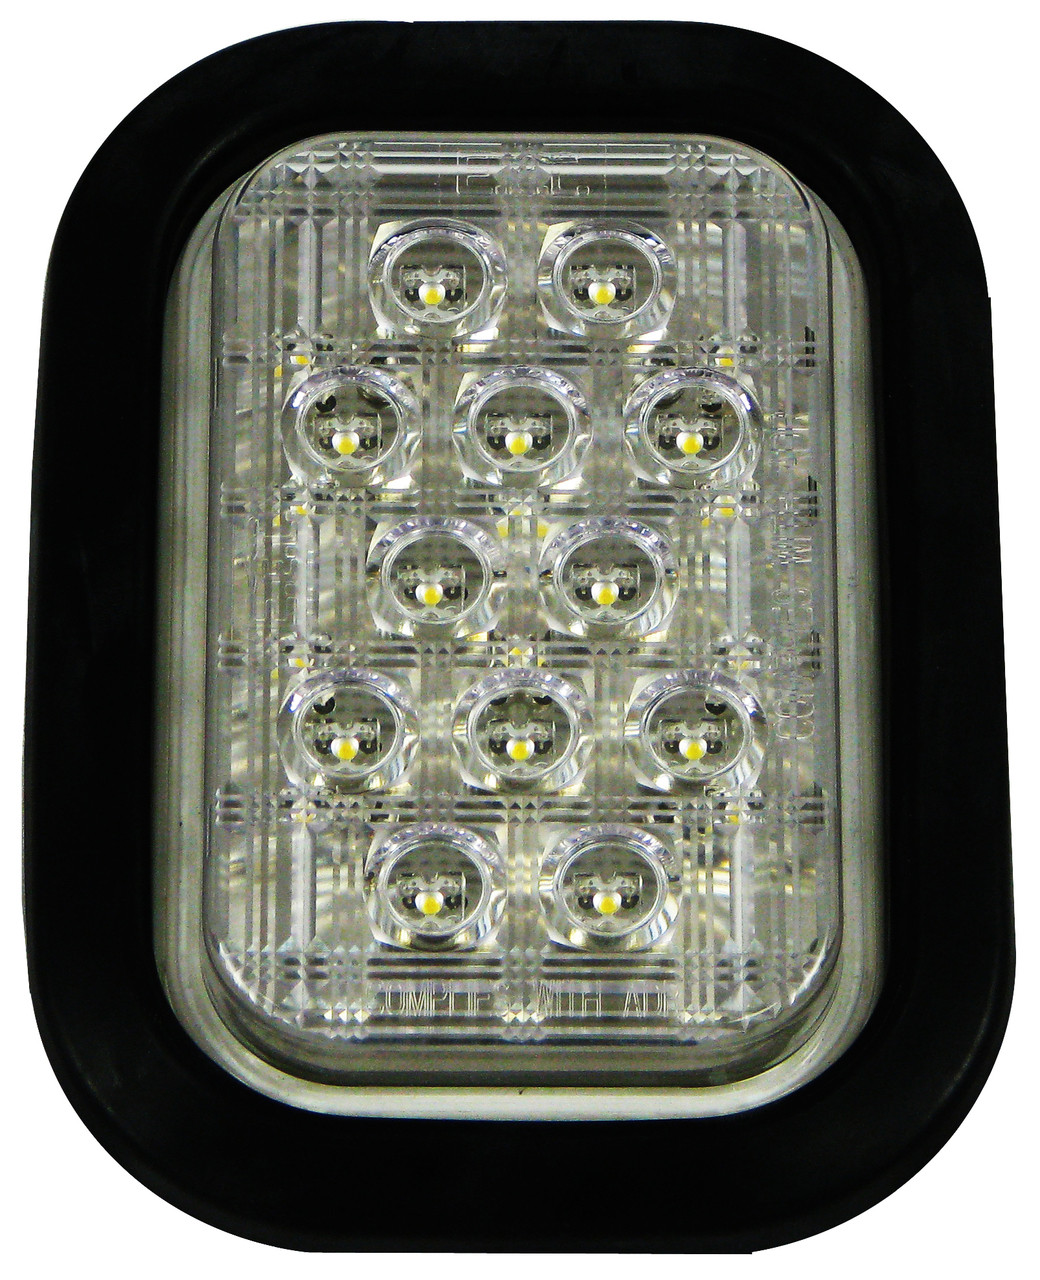 210RV18. BR160W. ROADVISION LED Rear Reverse Light. Rectangle, Clear Lens, Rubber Grommet Mount